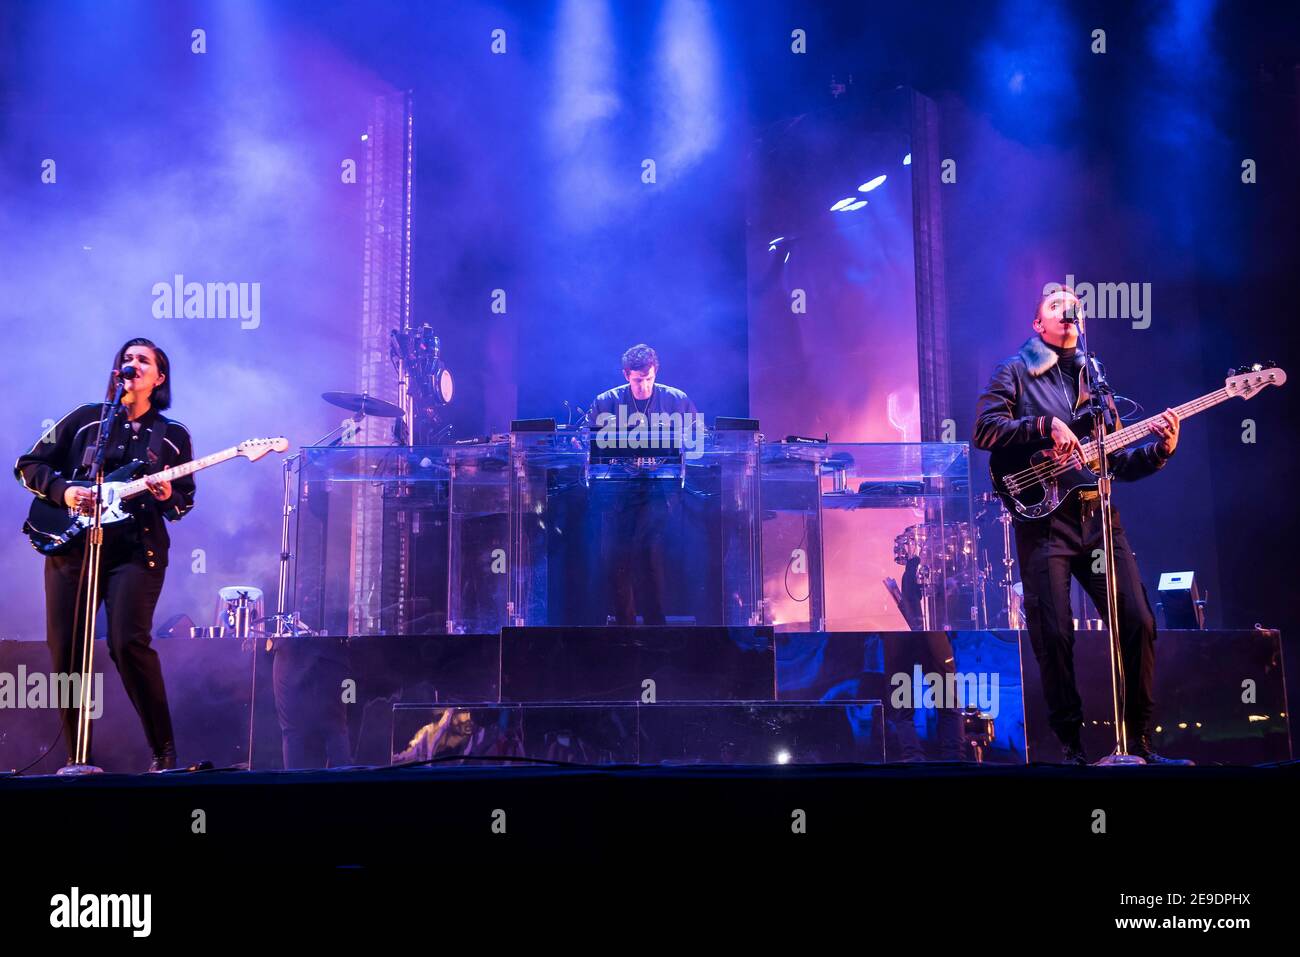 El XX actúan en vivo en el escenario en el Bestival 2017 en el Castillo de Lulworth - Wareham. Foto de stock